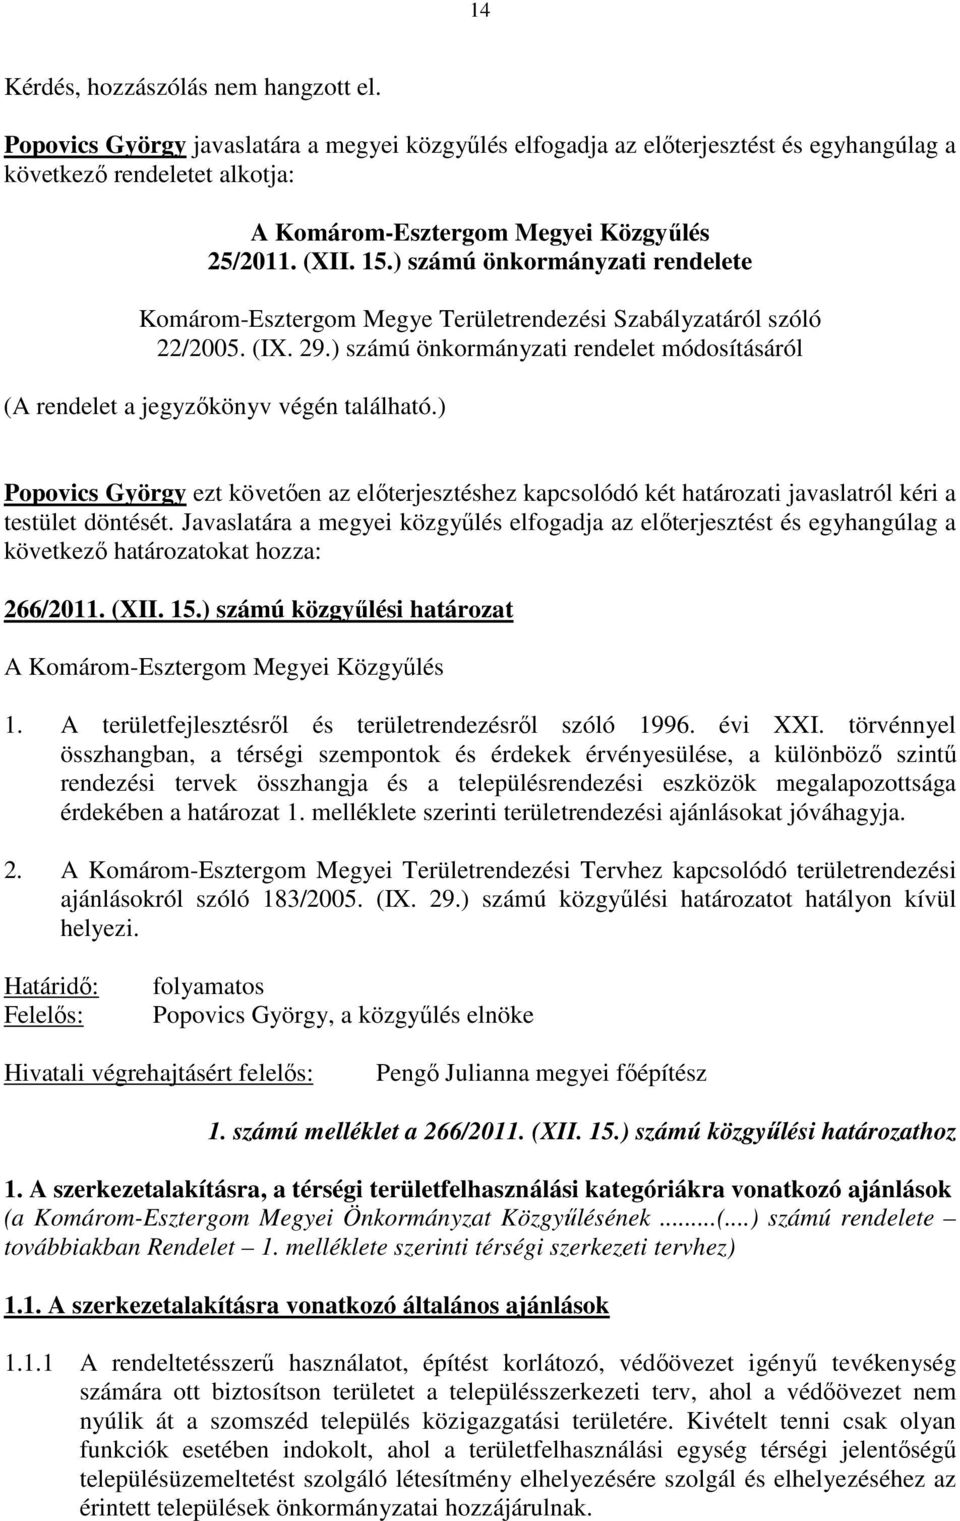 ) számú önkormányzati rendelete Komárom-Esztergom Megye Területrendezési Szabályzatáról szóló 22/2005. (IX. 29.) számú önkormányzati rendelet módosításáról (A rendelet a jegyzıkönyv végén található.